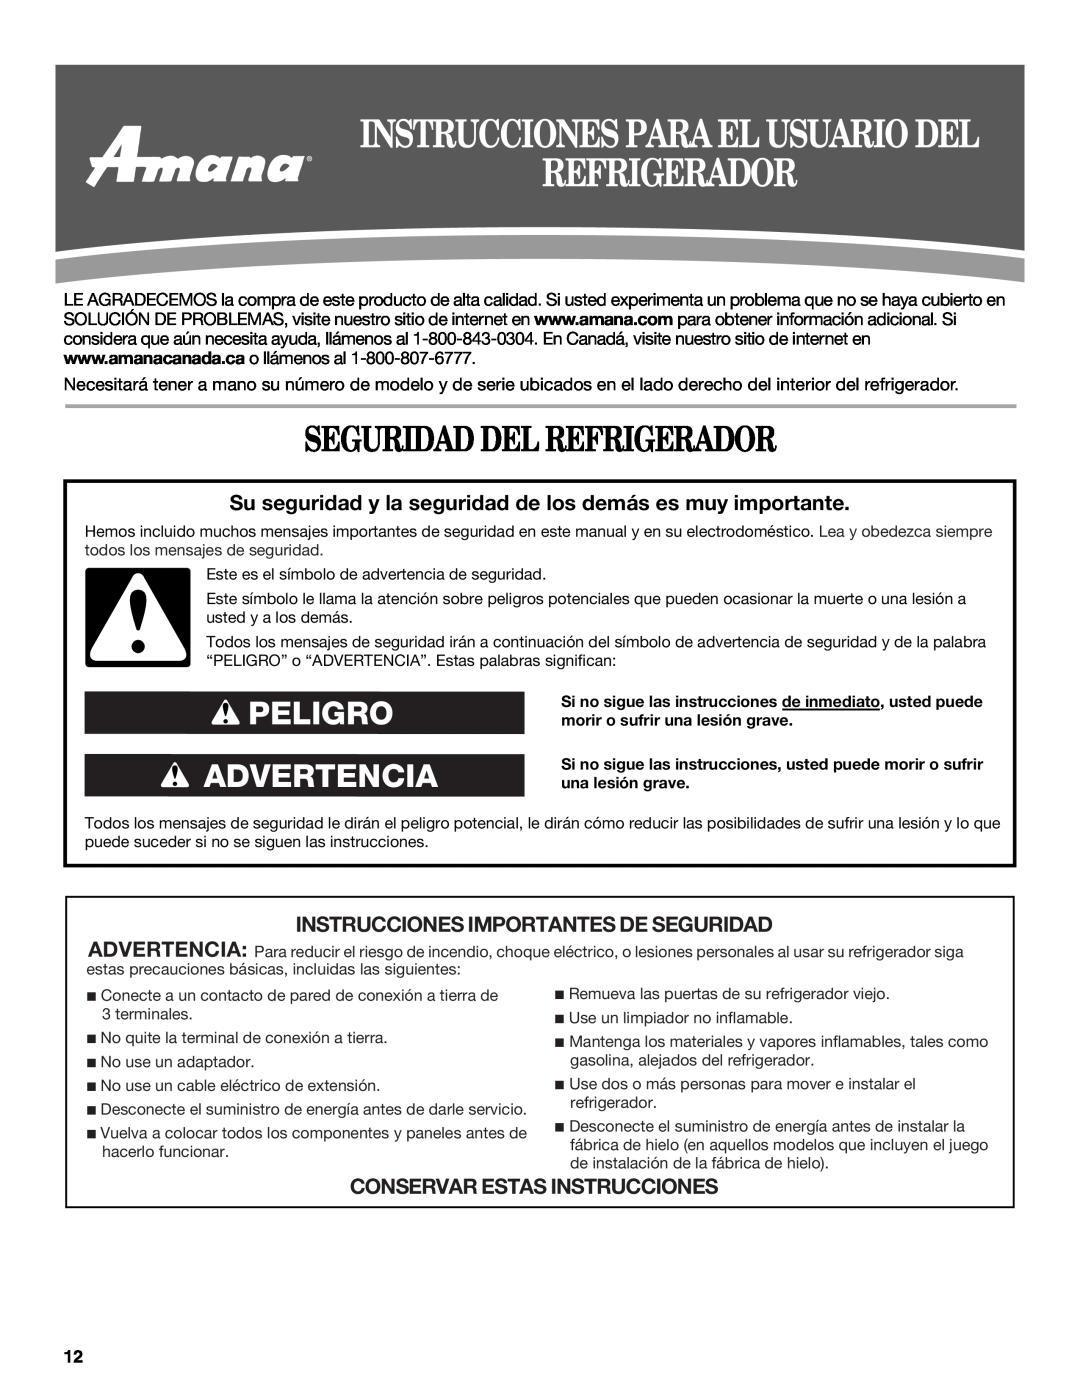 Amana ATB1932MRW Seguridad Del Refrigerador, Instrucciones Para El Usuario Del, Peligro Advertencia 